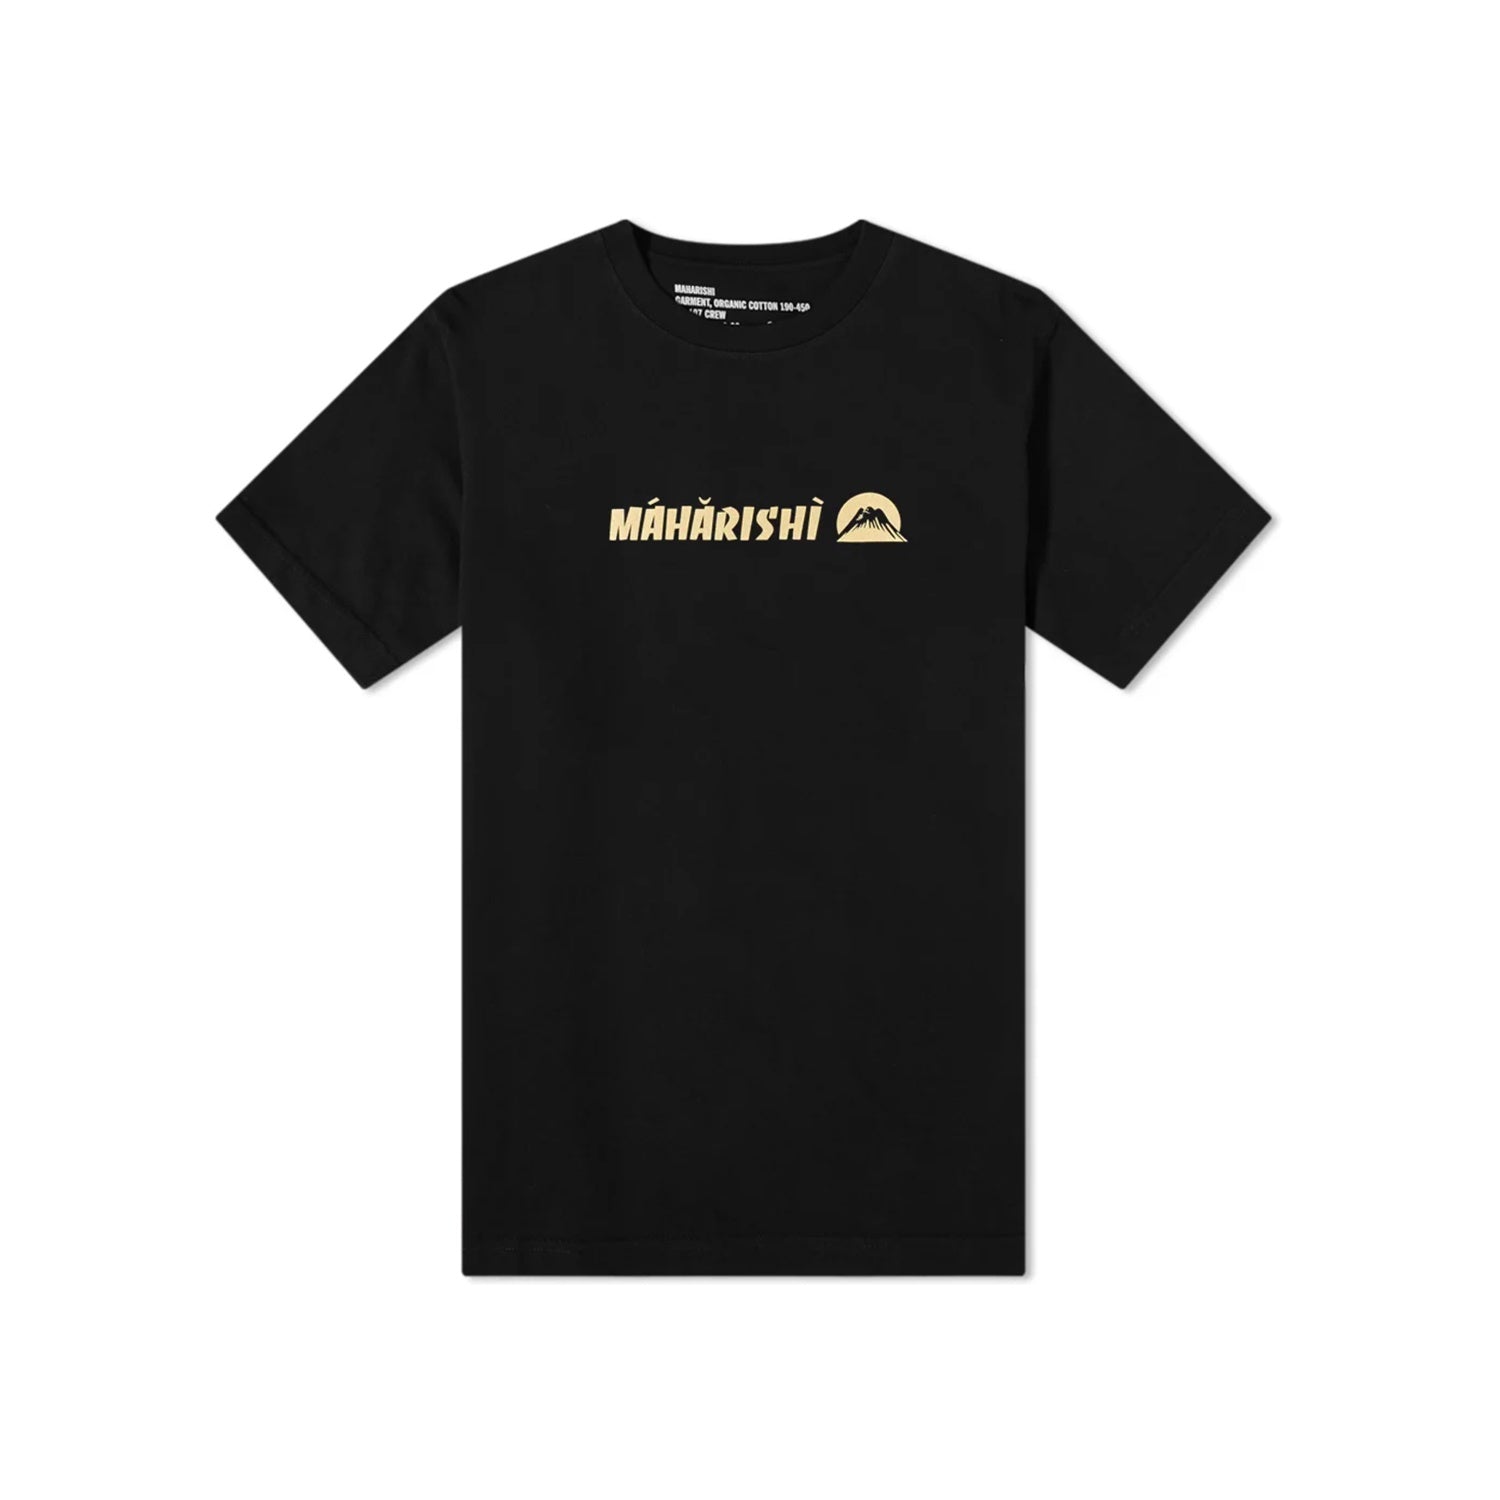 Maharishi Maha Gold Tailor T-Shirt Organic Jersey 190 Black